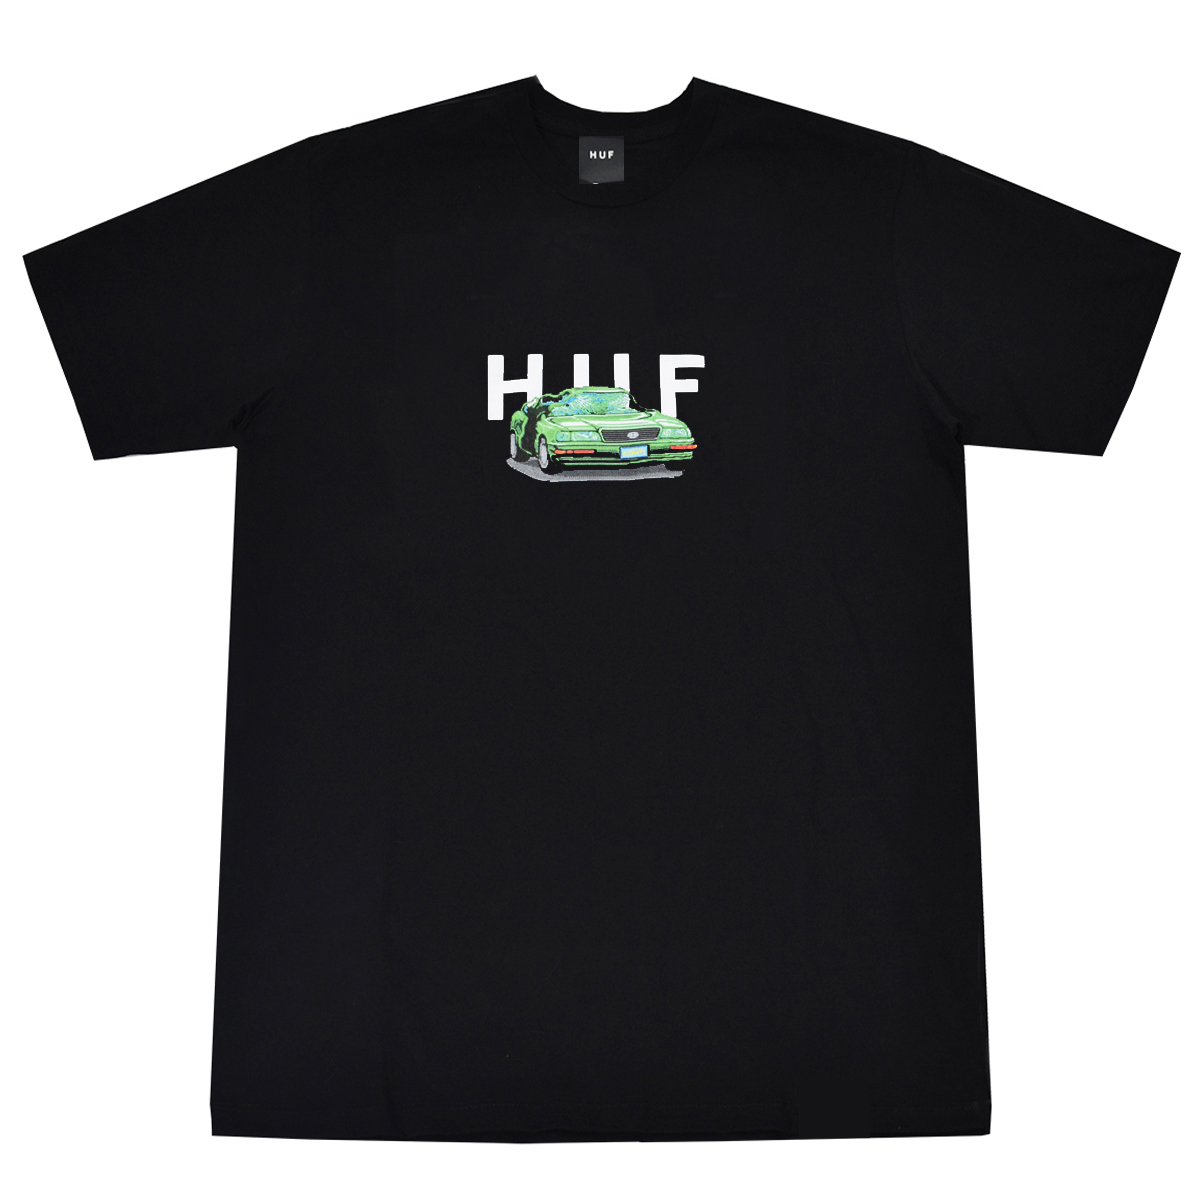 Camiseta Huf x Street Fighter Bonus Stage Black